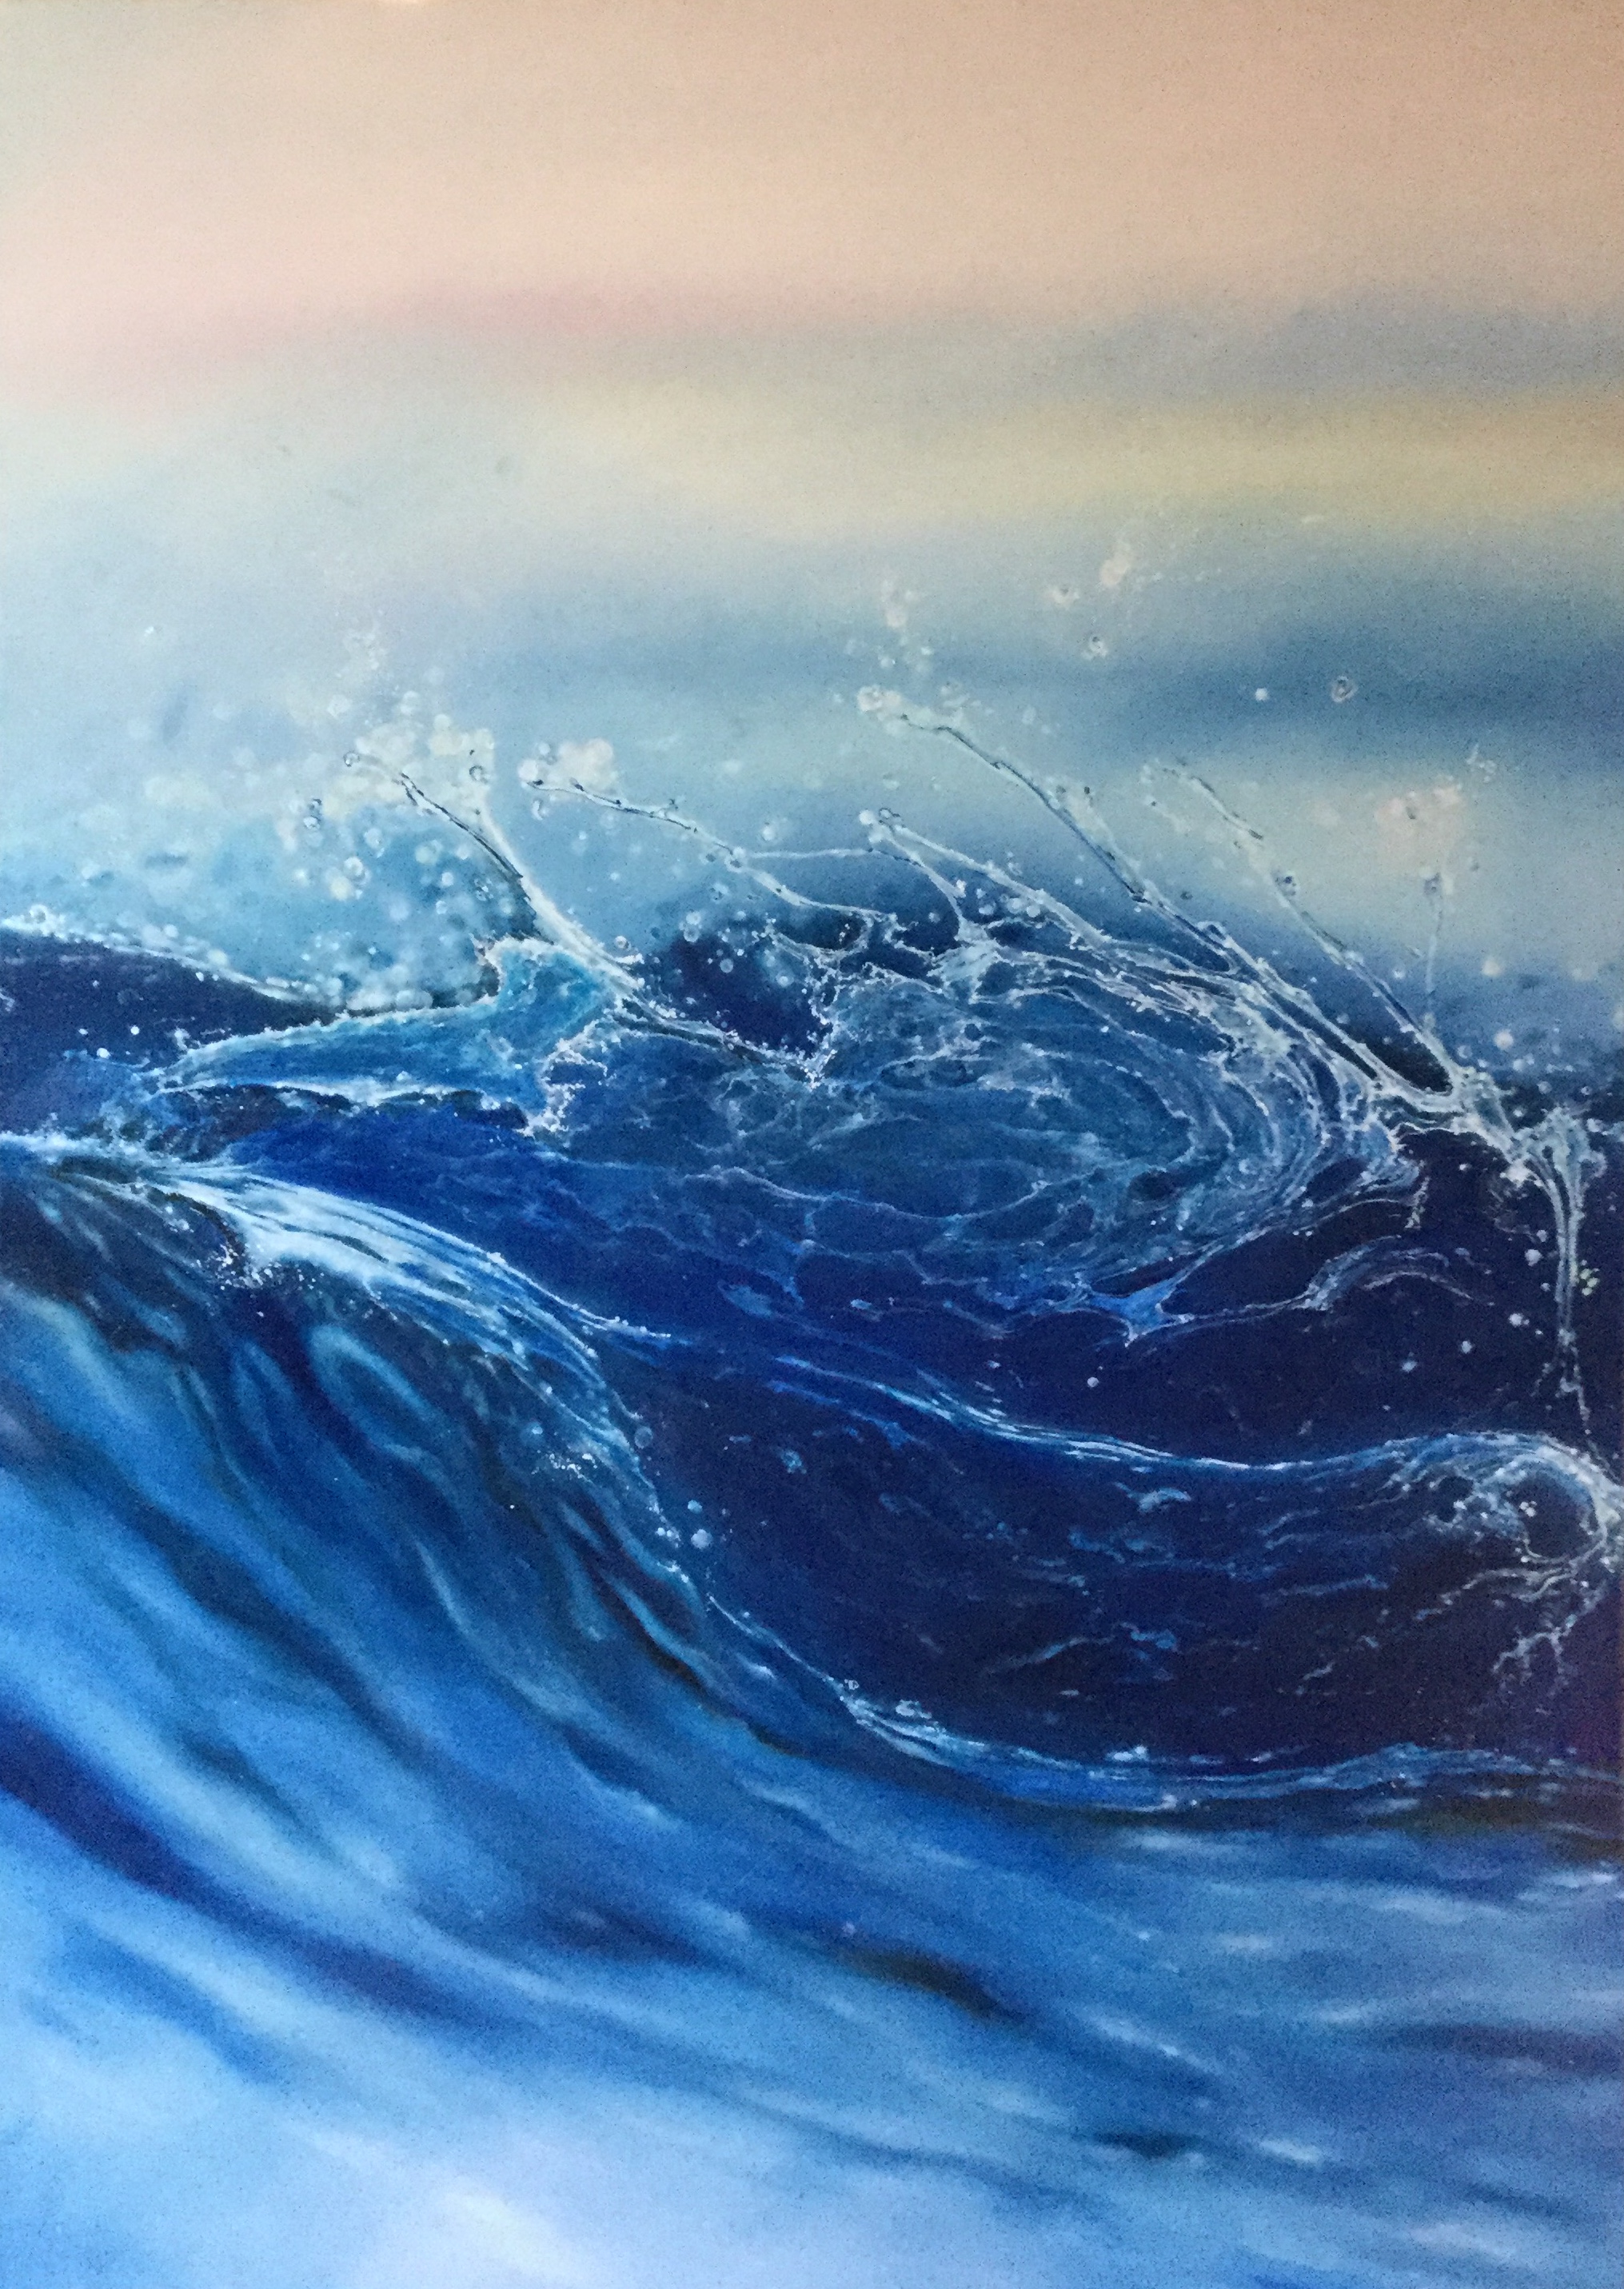 Rikki paintings » Making 100 Waves